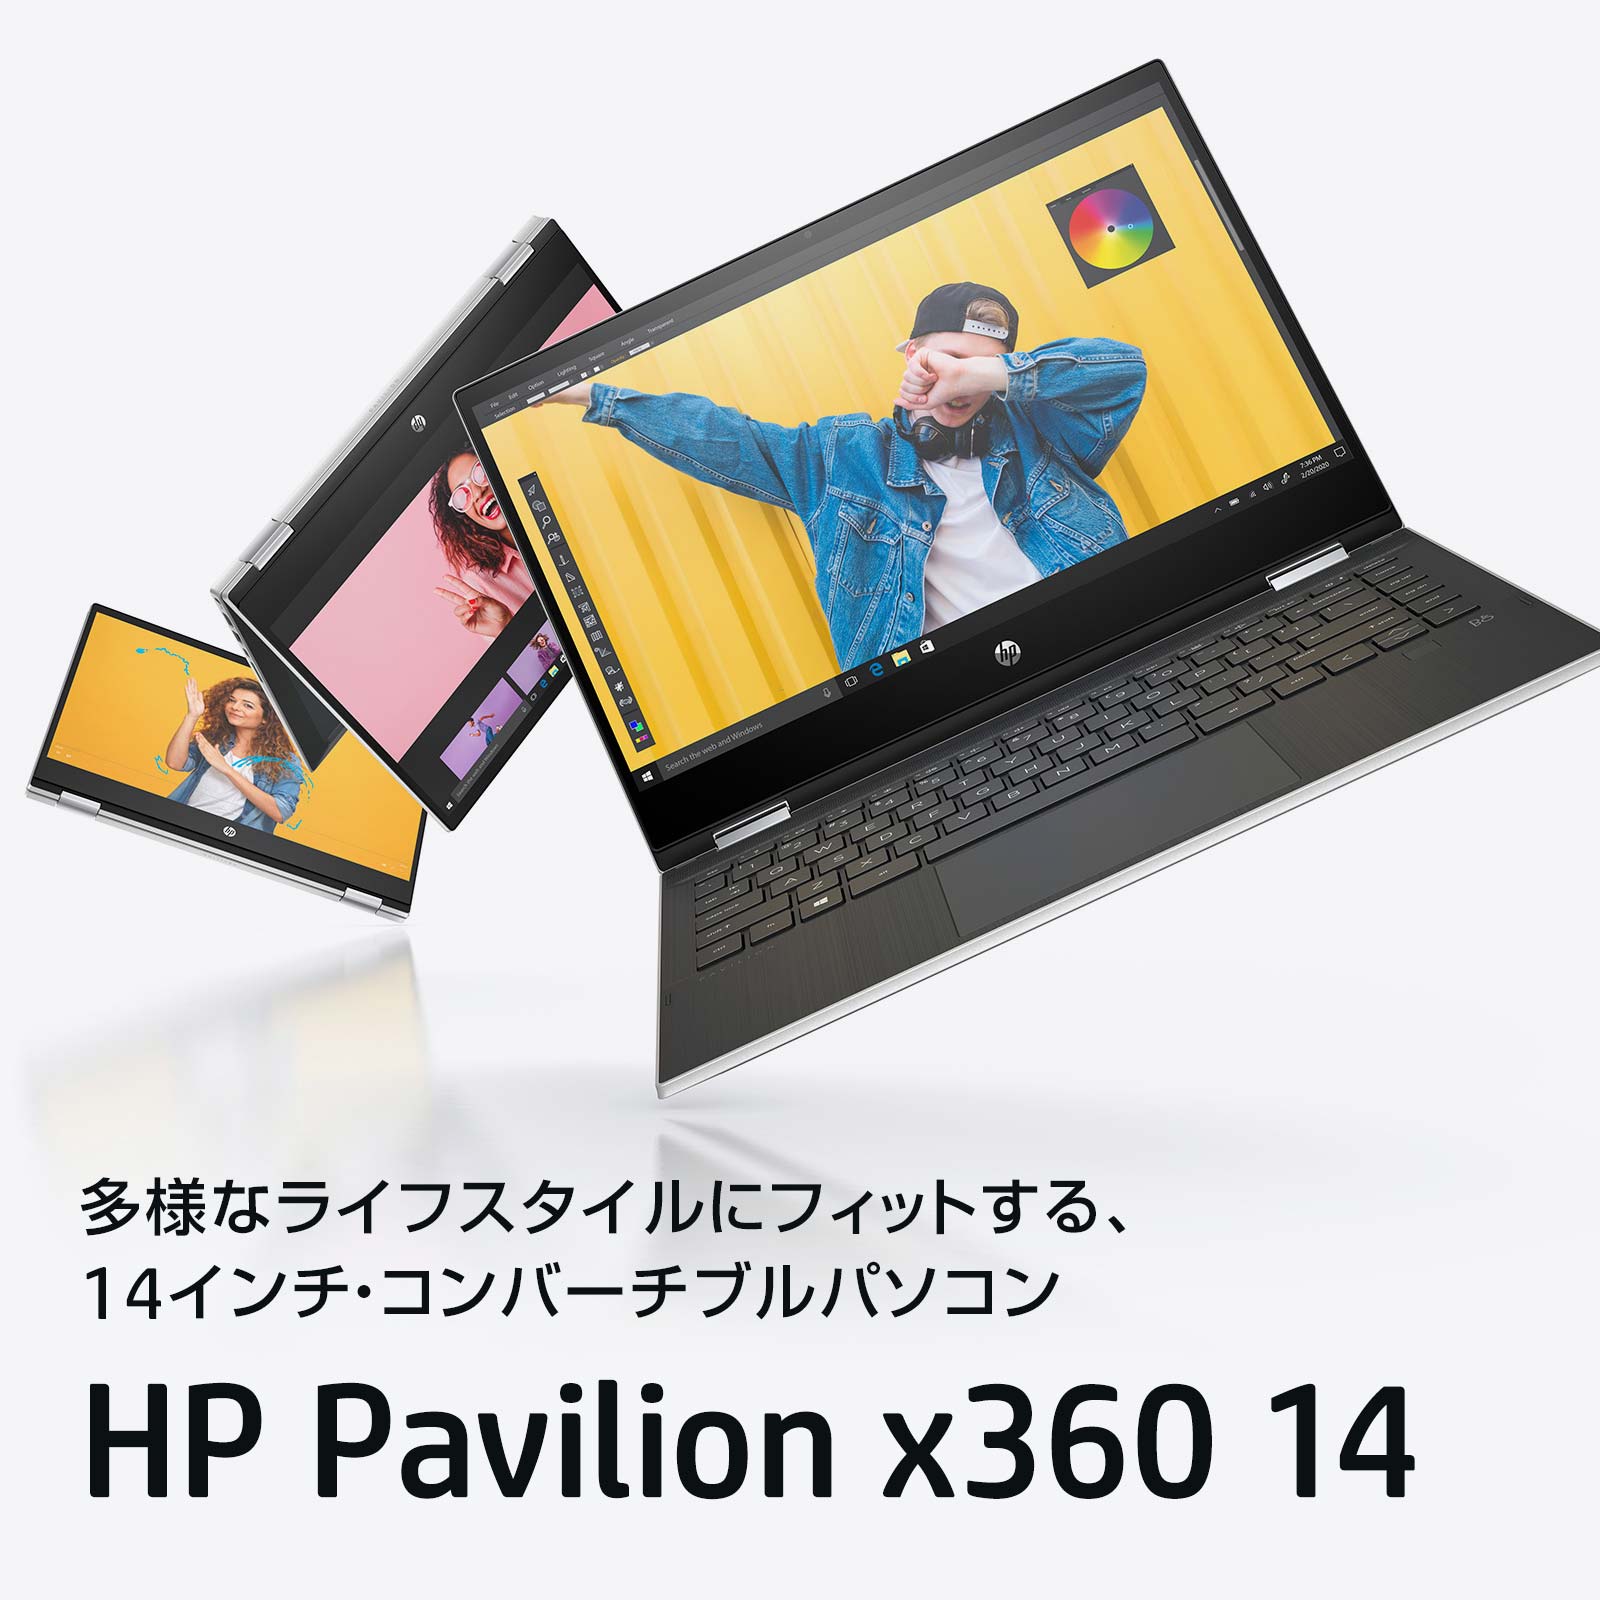 HP Pavilion x360 14-dw